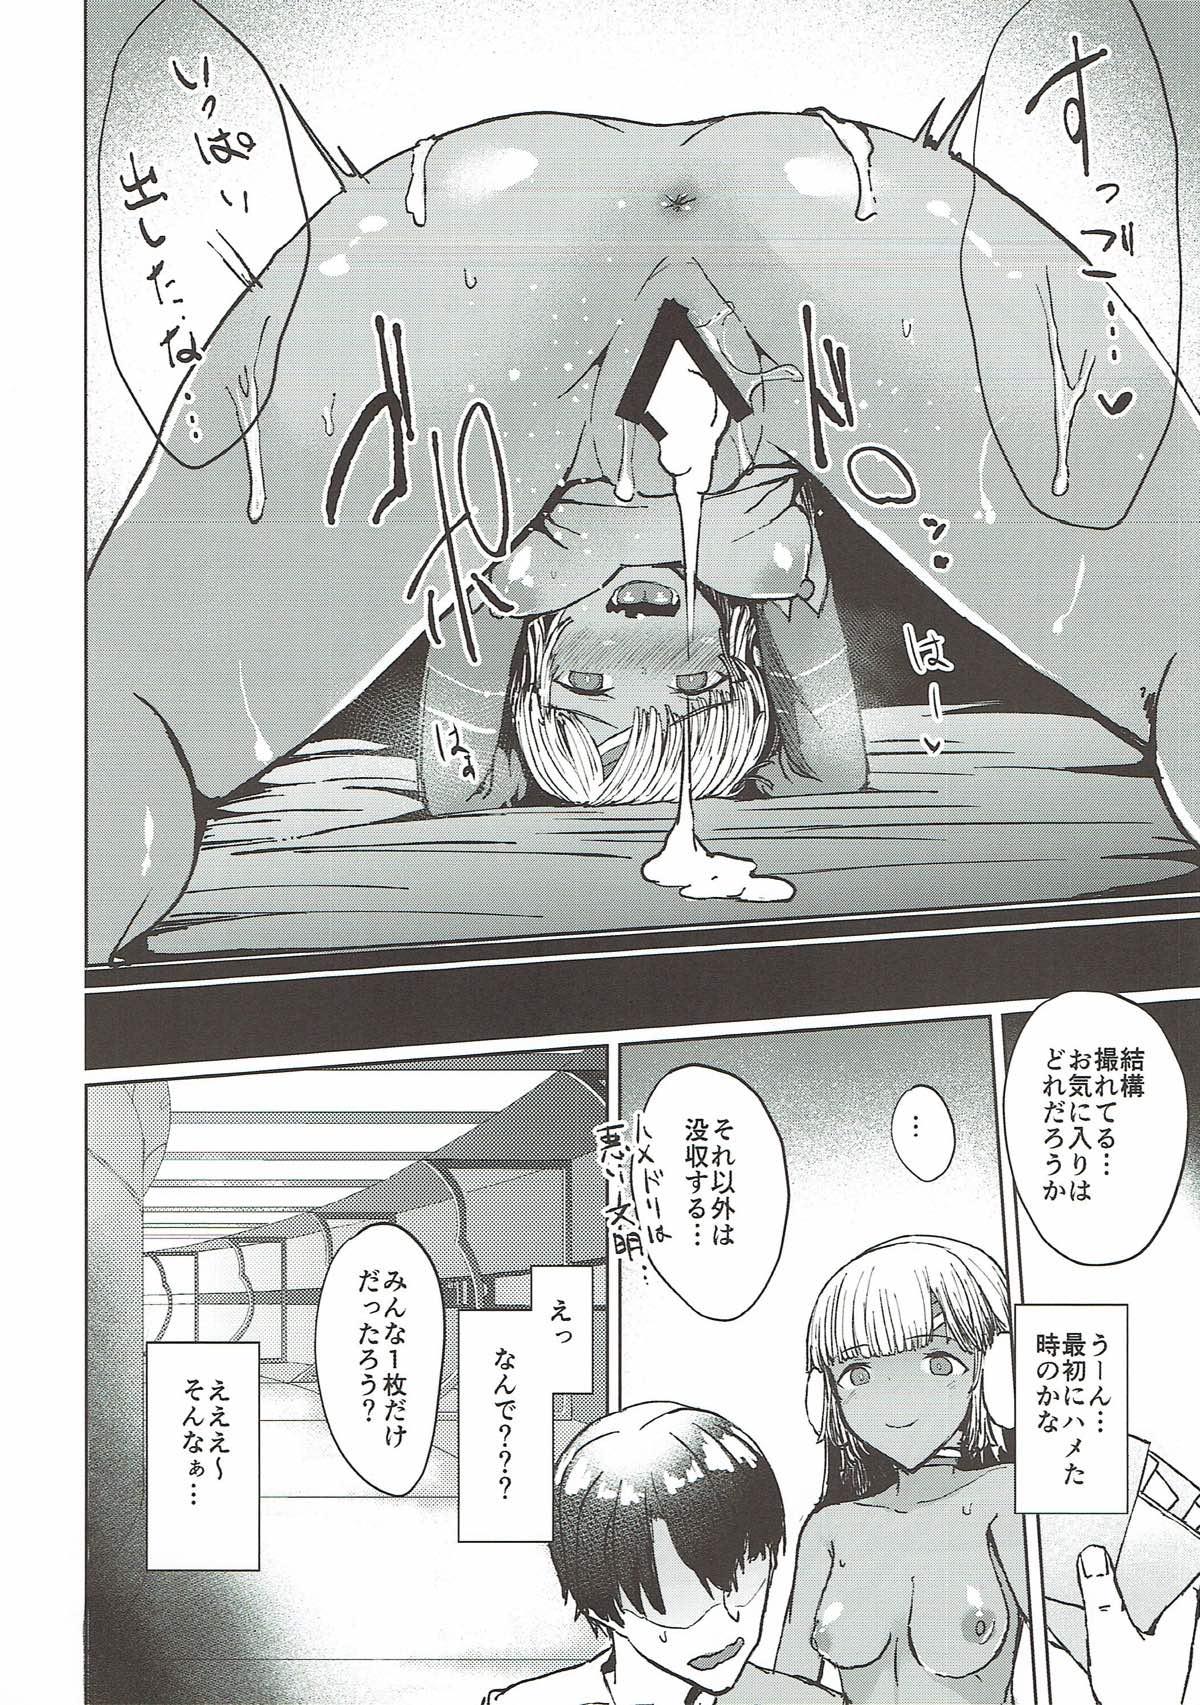 Titties Present Hoshii Mono ga nai? Kore Igai... Naraba Shikata ga Nai - Fate grand order Playing - Page 11